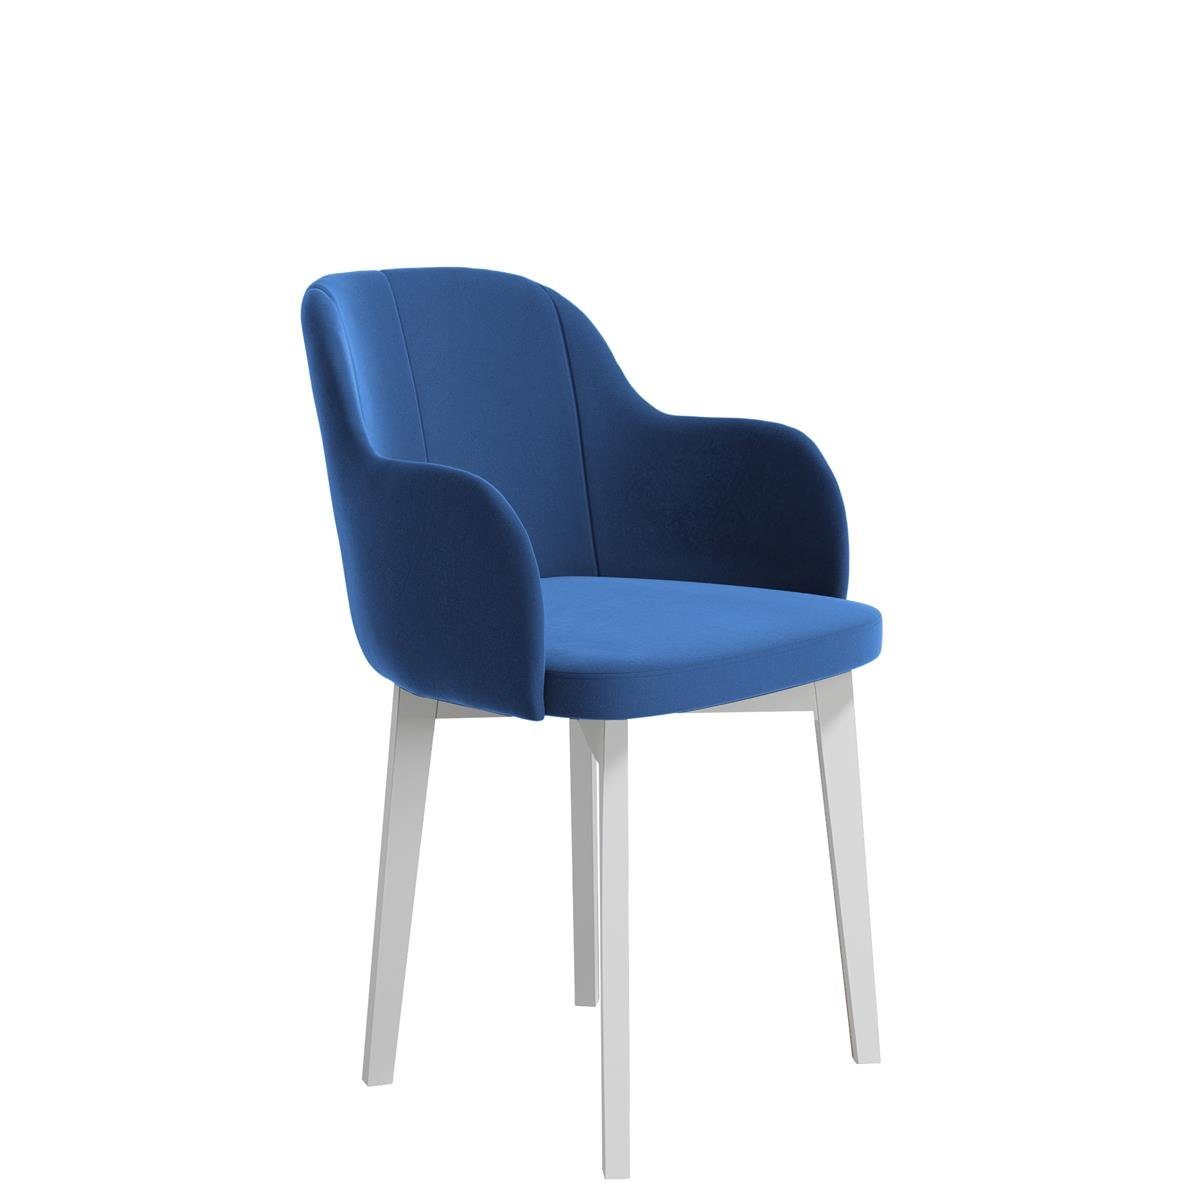 Beautysofa Polsterstuhl Relax (aus Veloursstoff), Stuhl für Wohnzimmer oder Büro, Relaxstuhl mit Holzbeine Blau (riviera 81) | Polsterstühle